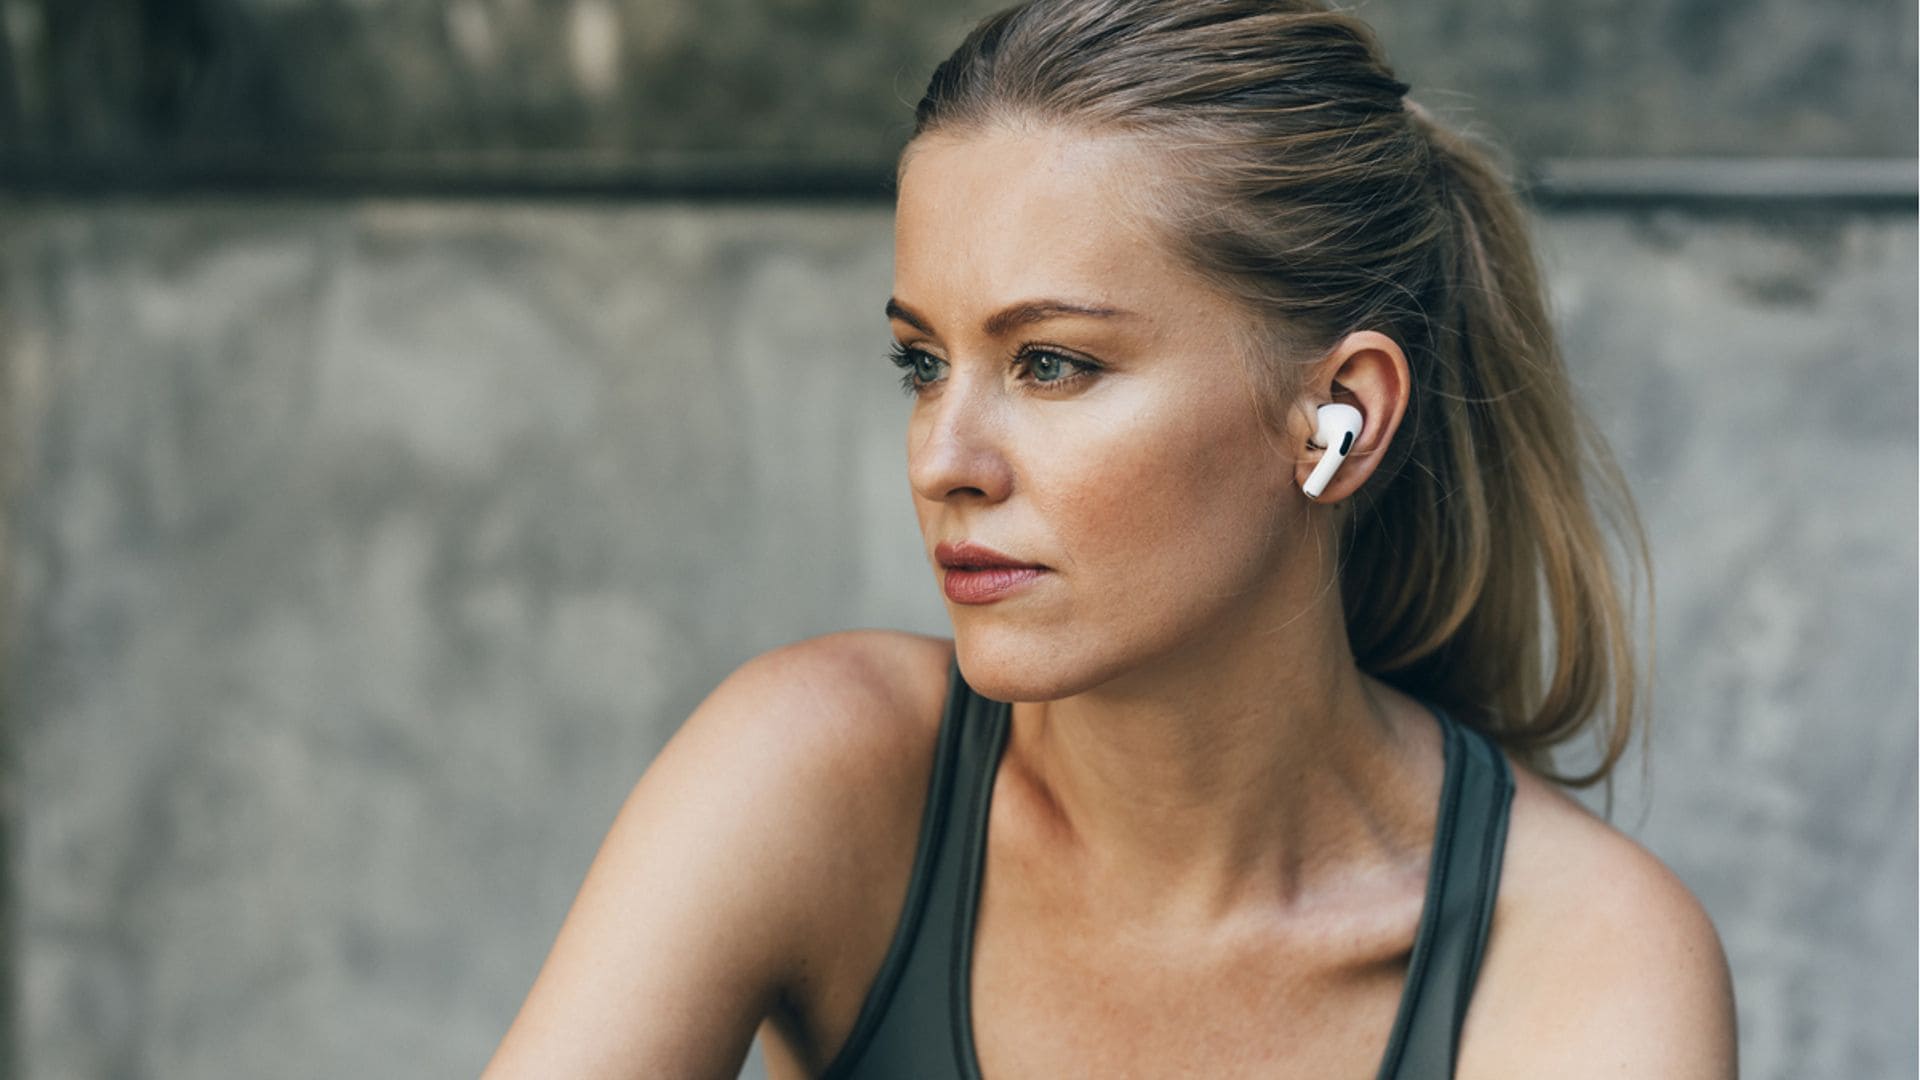 Seleccionamos los cinco mejores auriculares de Xiaomi por su relación calidad-precio